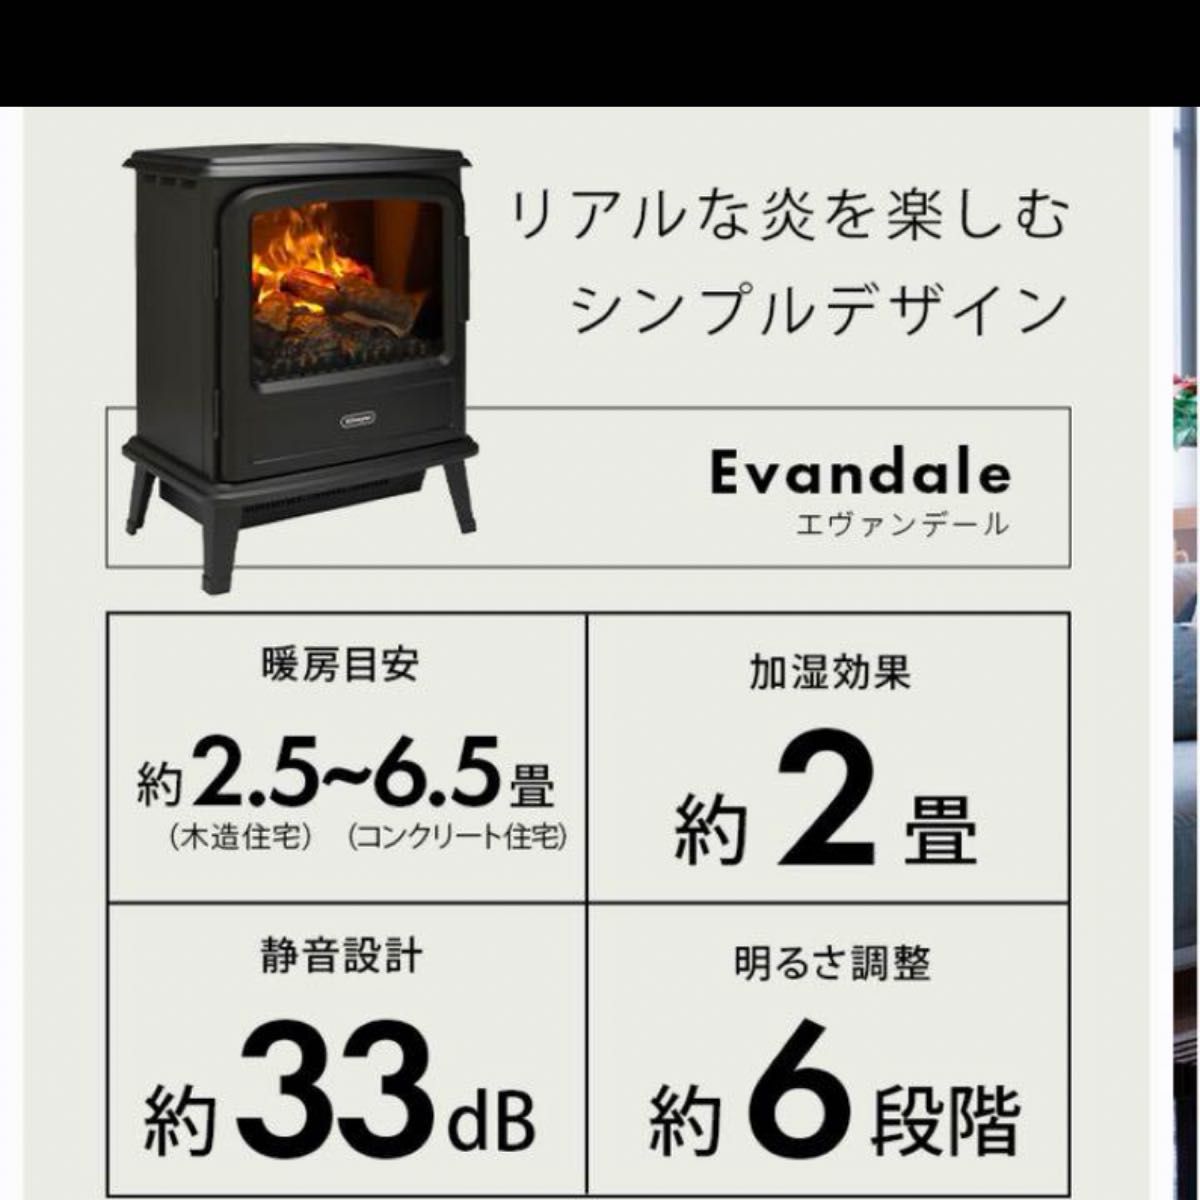 暖炉型ファンヒーター 暖炉 暖炉型 セラミックヒーター ヒーター 暖炉の揺らめく炎を演出 電気暖炉 暖炉型ヒーター